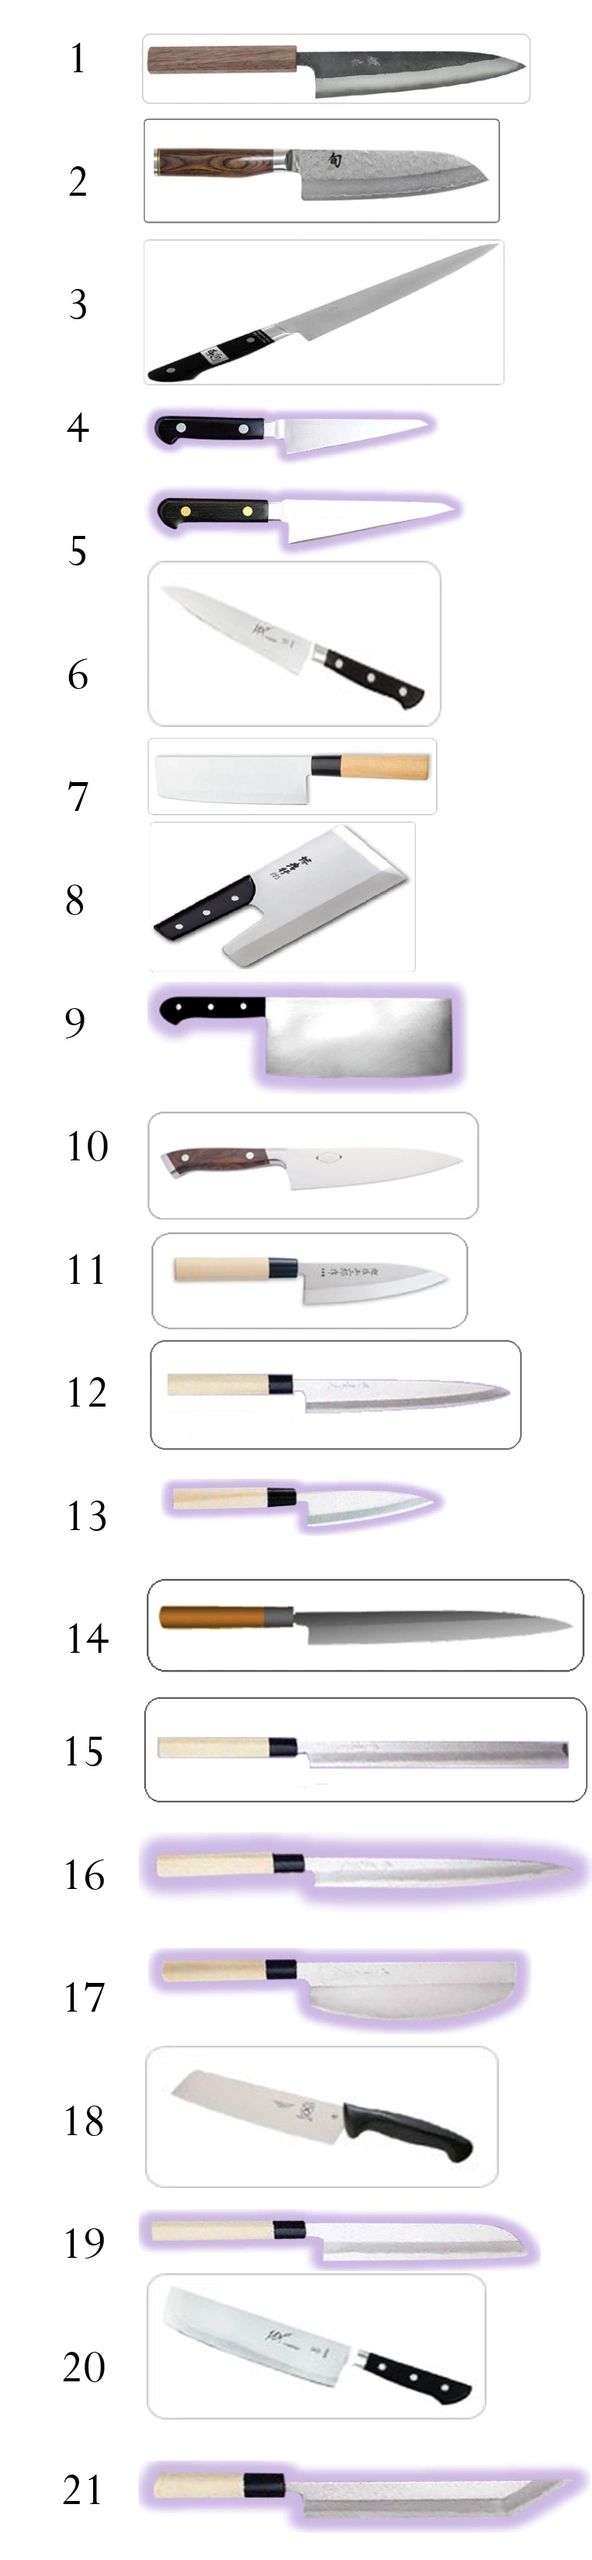 Os 21 tipos de facas de estilo oriental